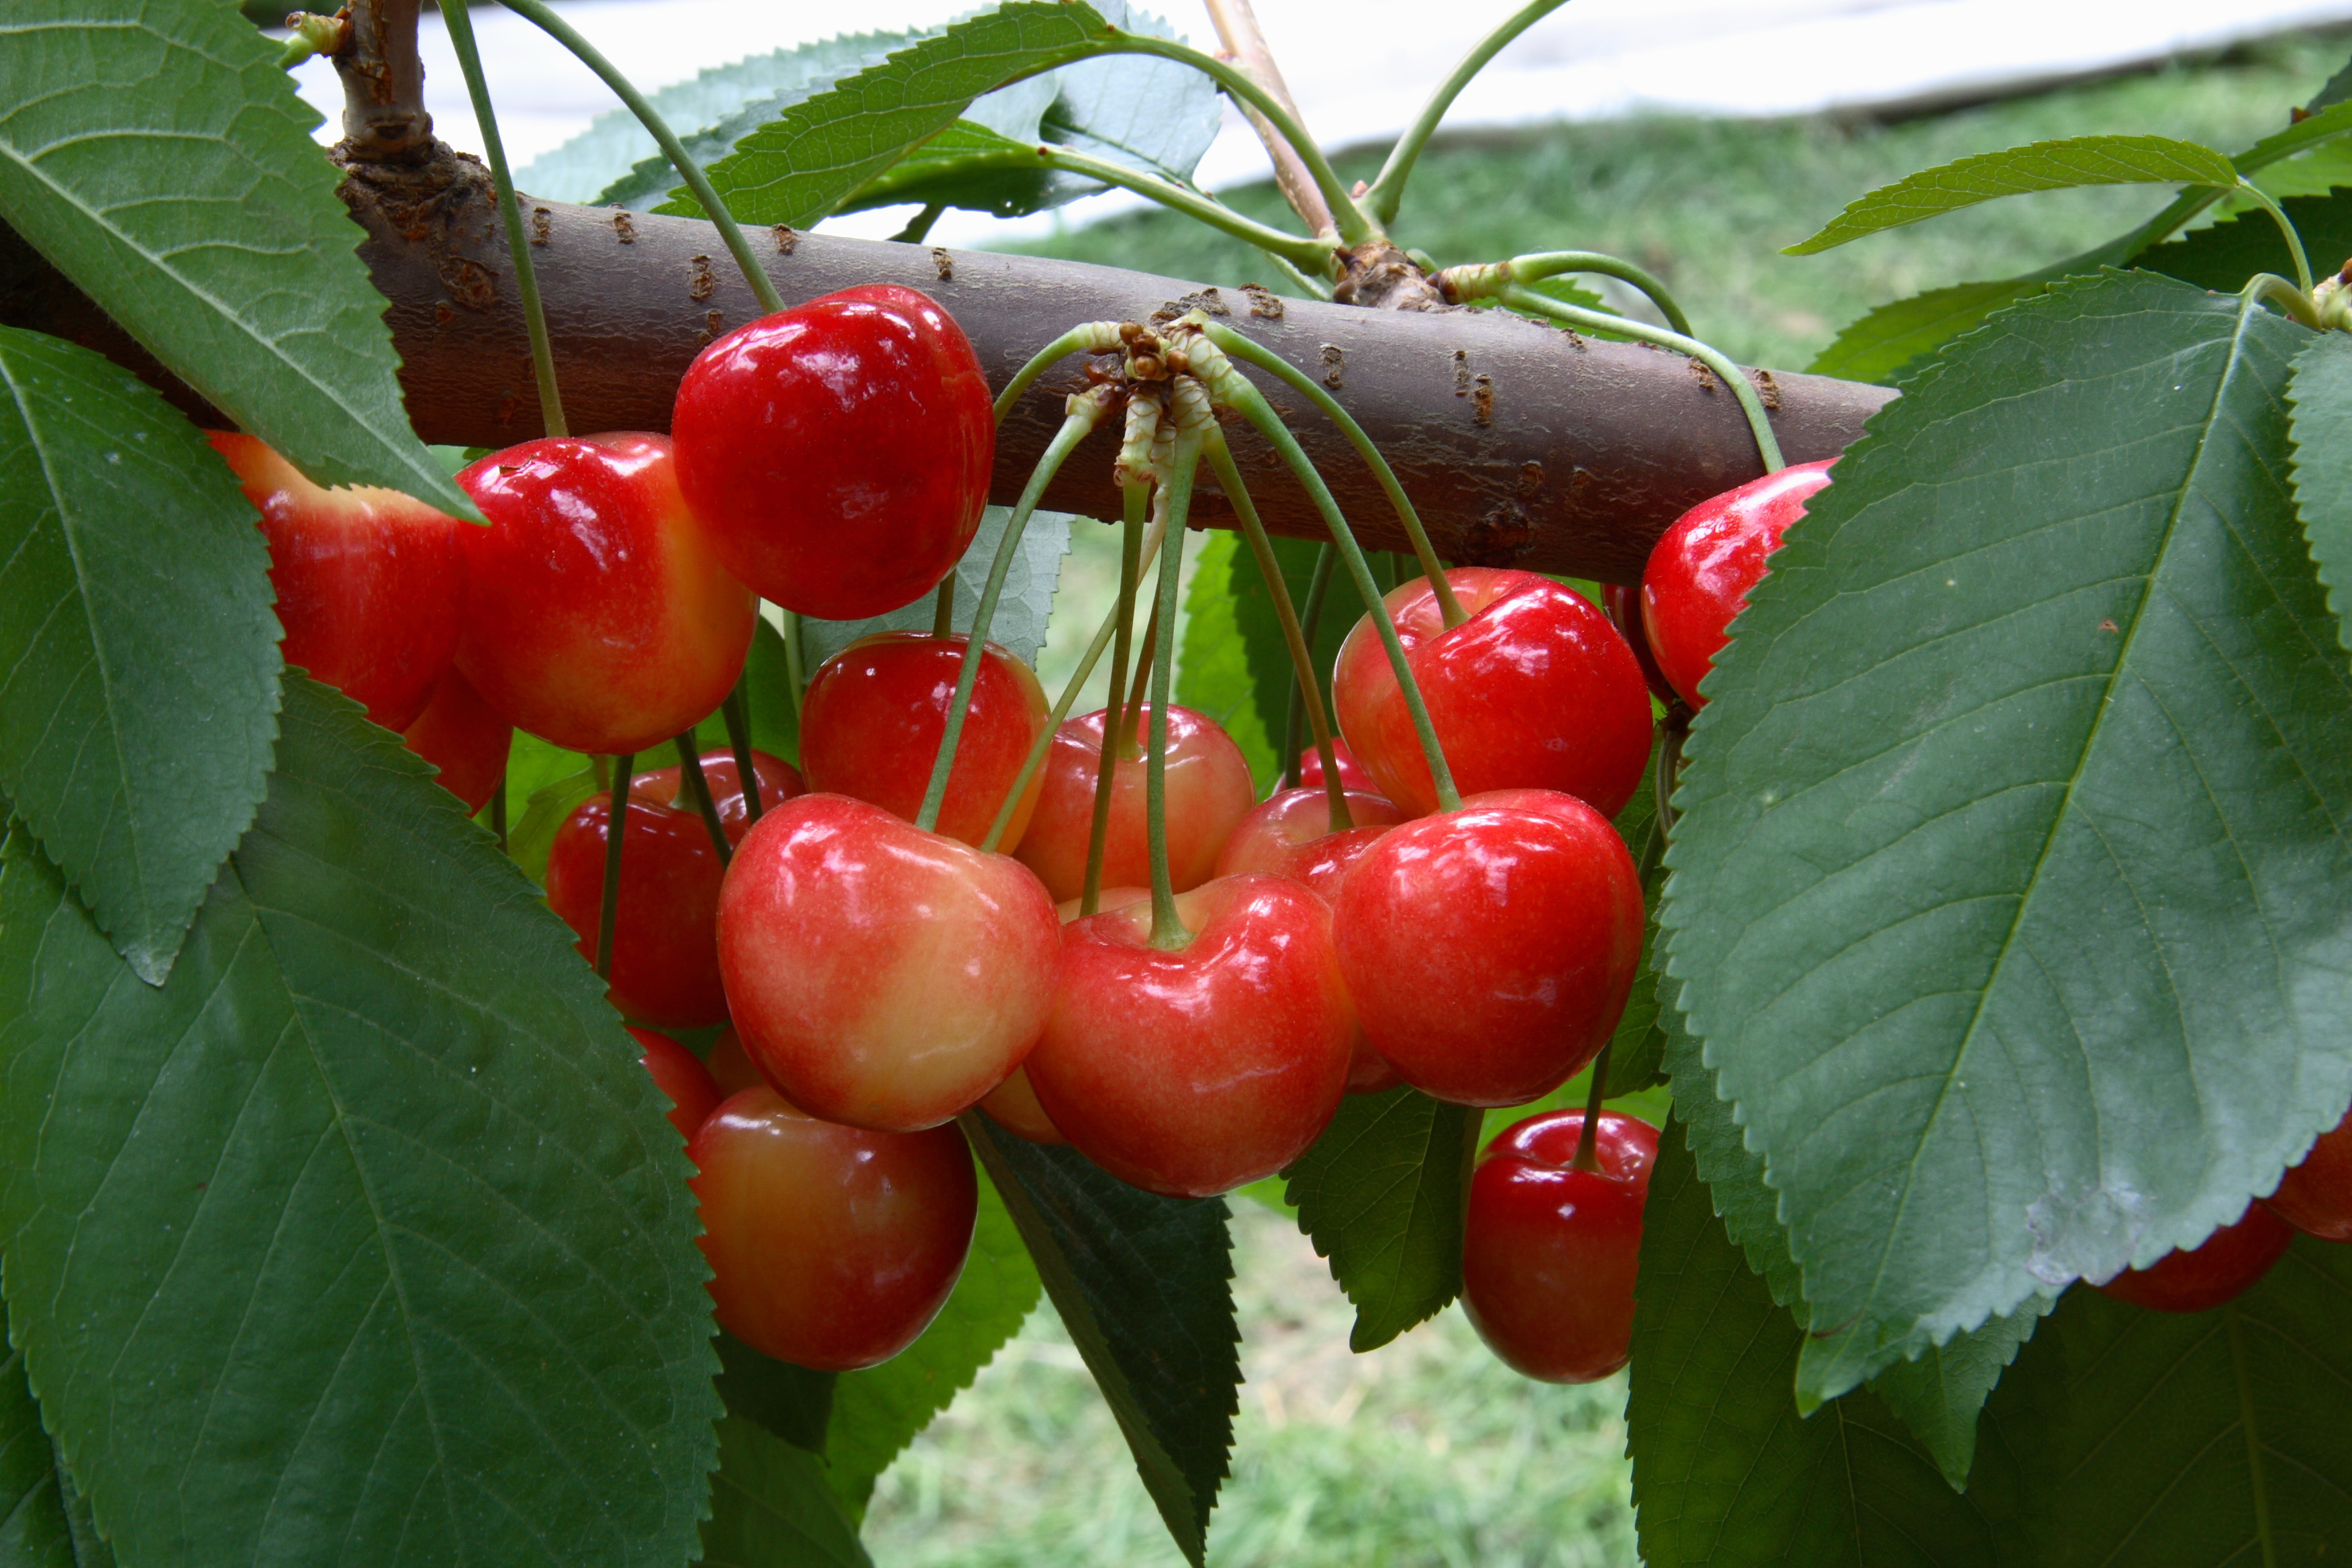 Rainier Cherries